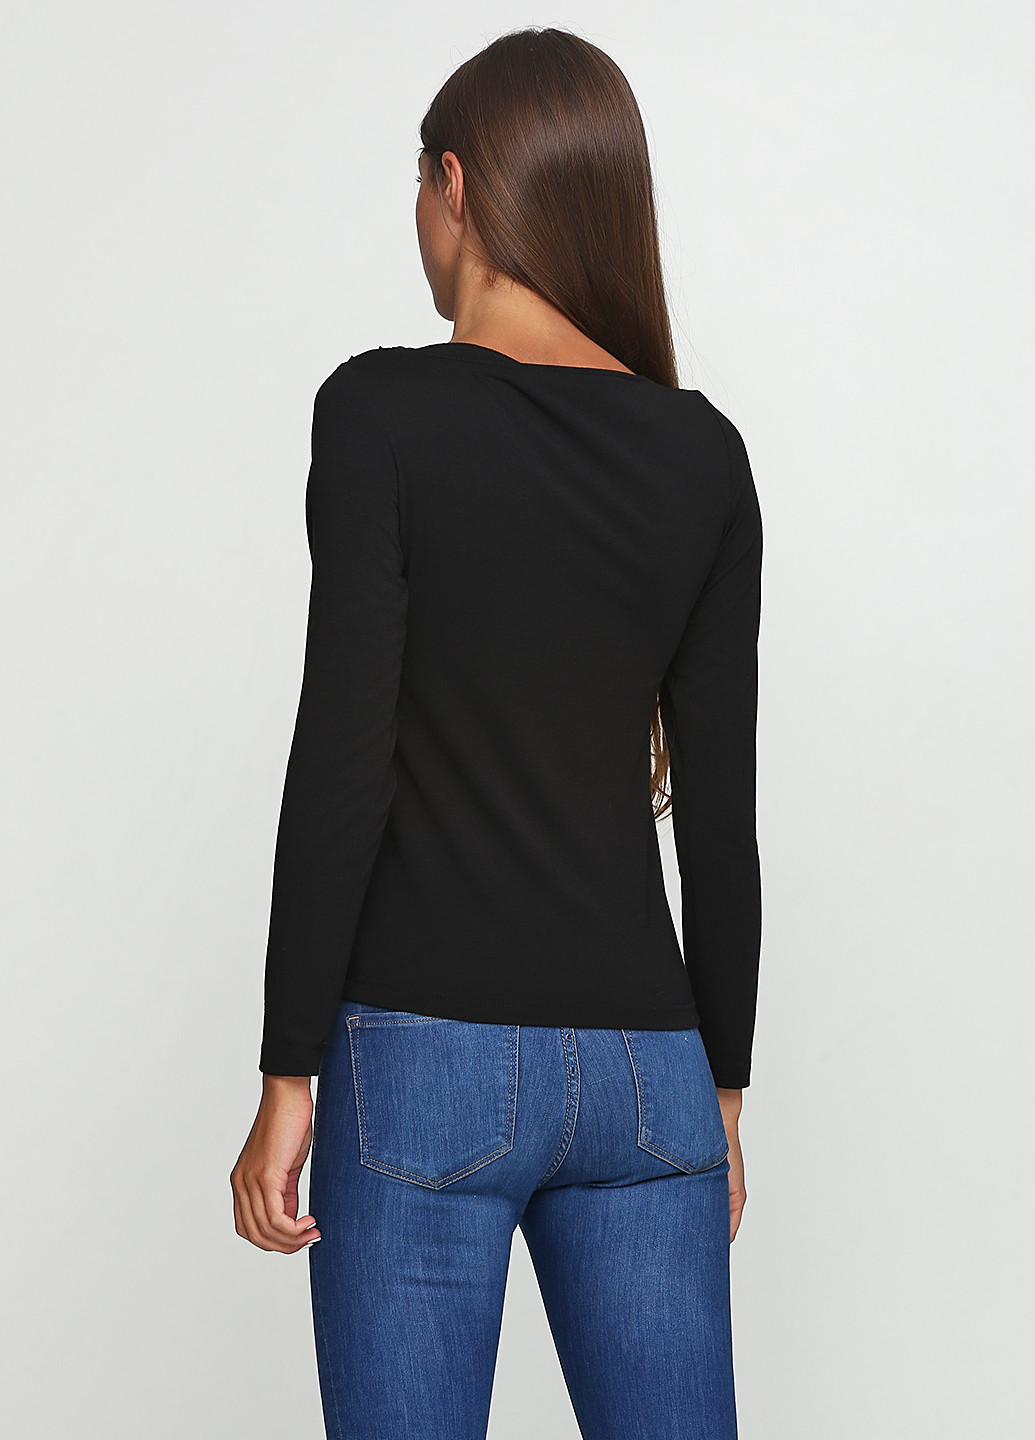 Чёрная блуза Stefanie L